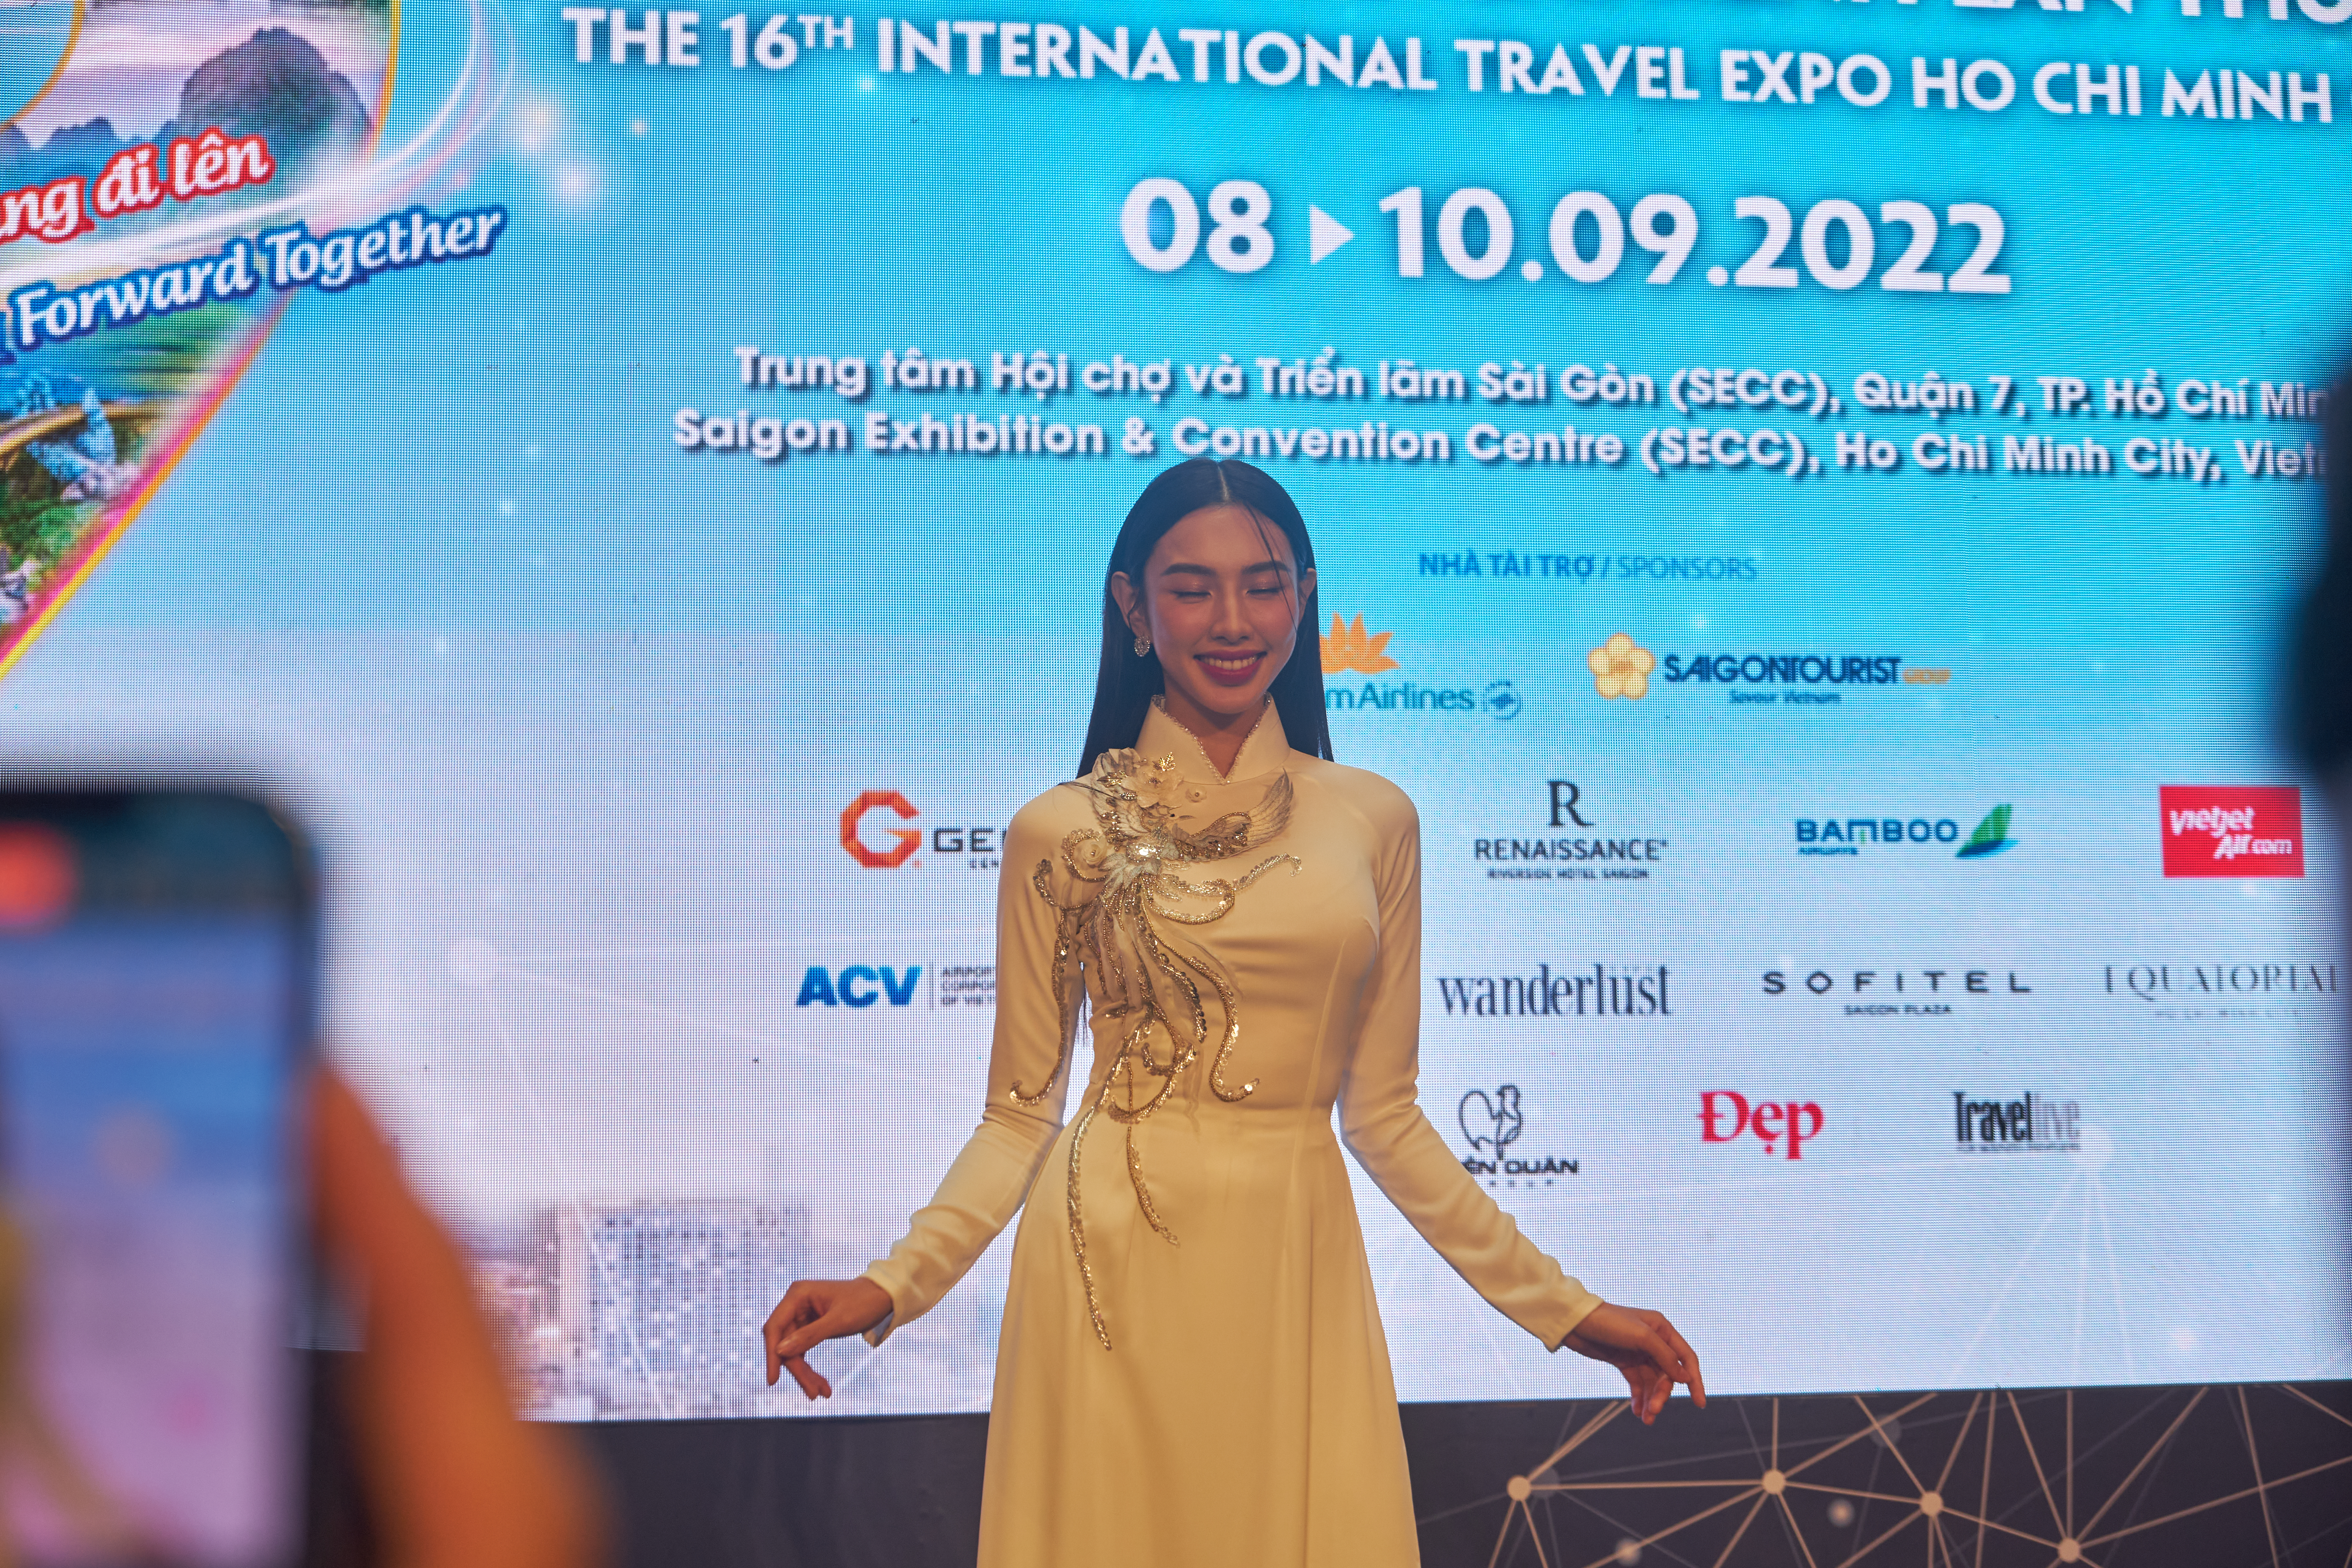 Hoa hậu Thùy Tiên là đại sứ truyền thông tại Hội chợ ITE 2022